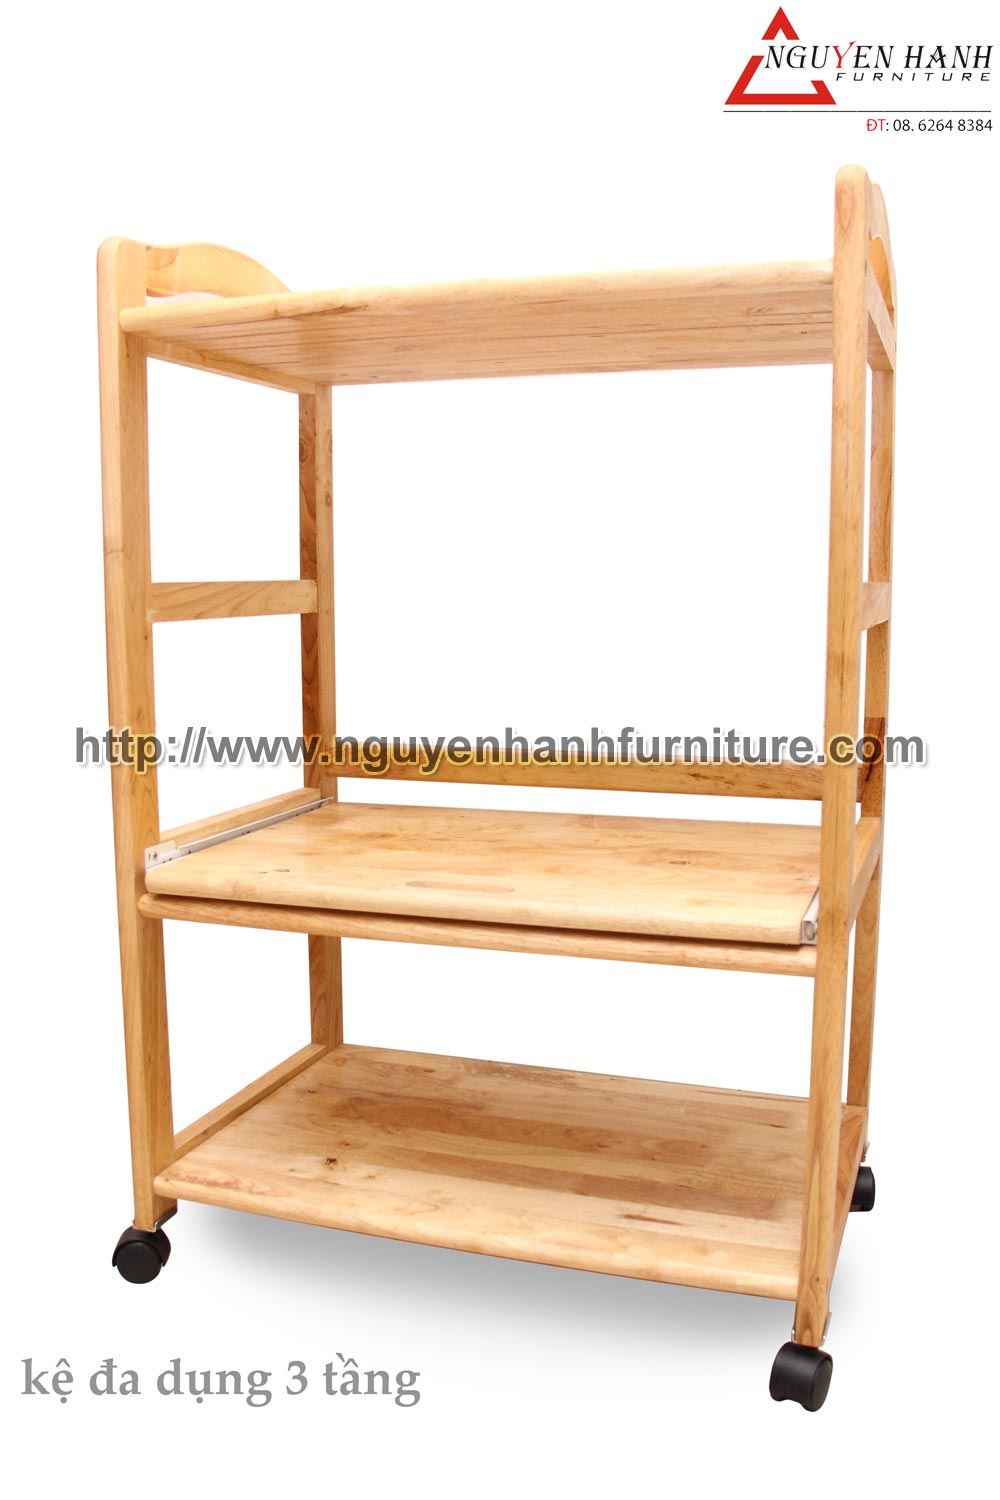 Name product: Triple-storey Multi-purpose Shelf - Dimensions: 87 x 60 x 40cm - Description: Wood natural rubber